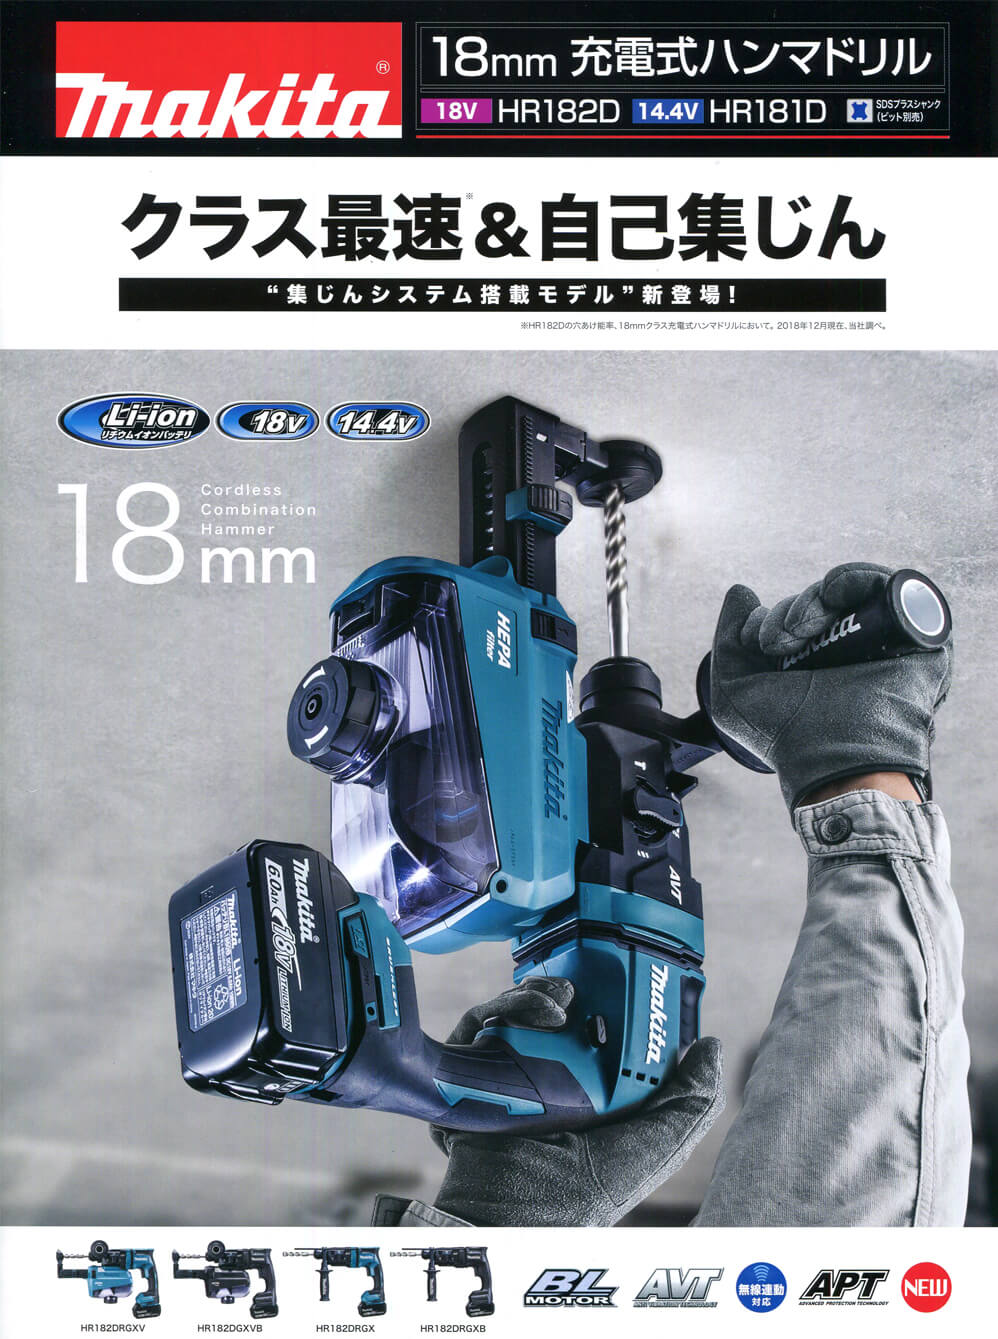 マキタ HR182DRGX 18mm充電式ハンマドリル 18V-6.0Ah ウエダ金物【公式